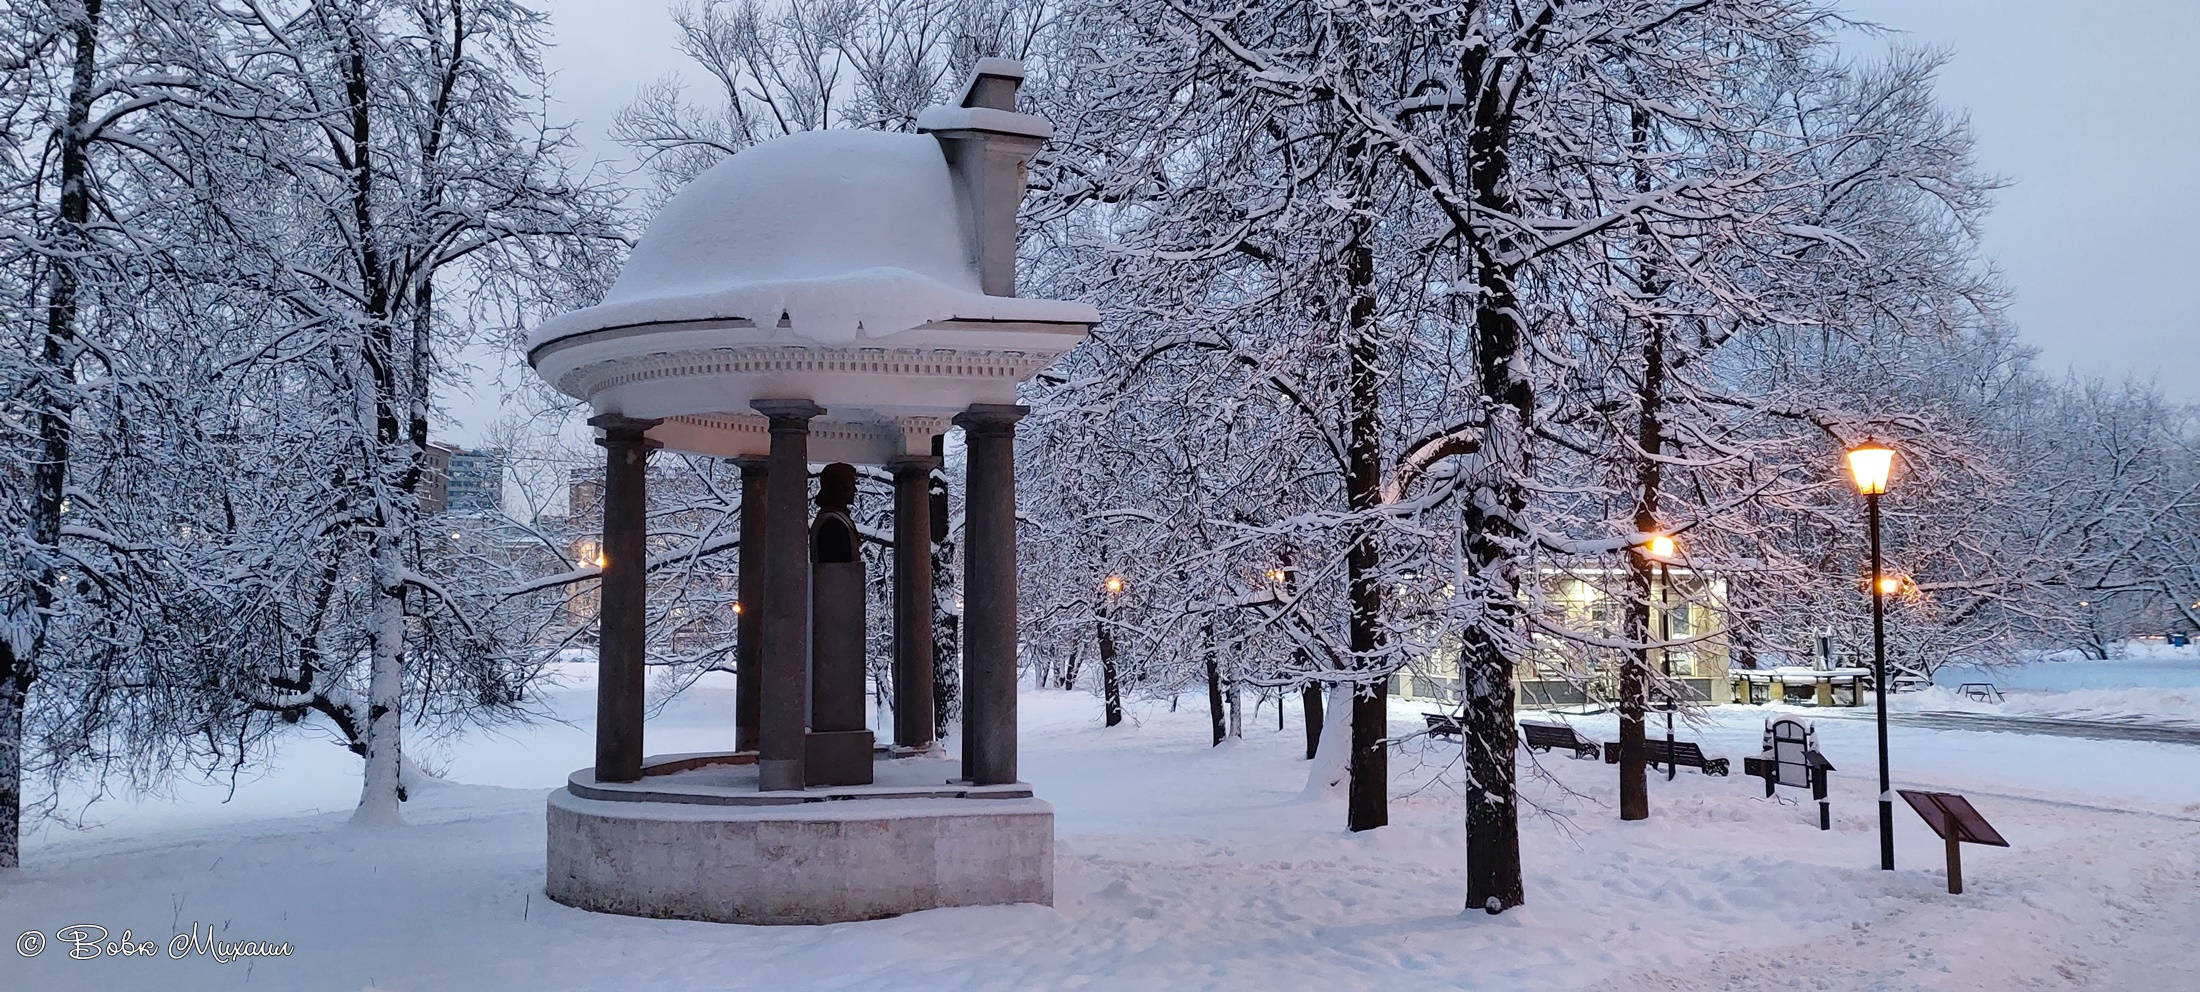 Москва Лефортово зимой фото